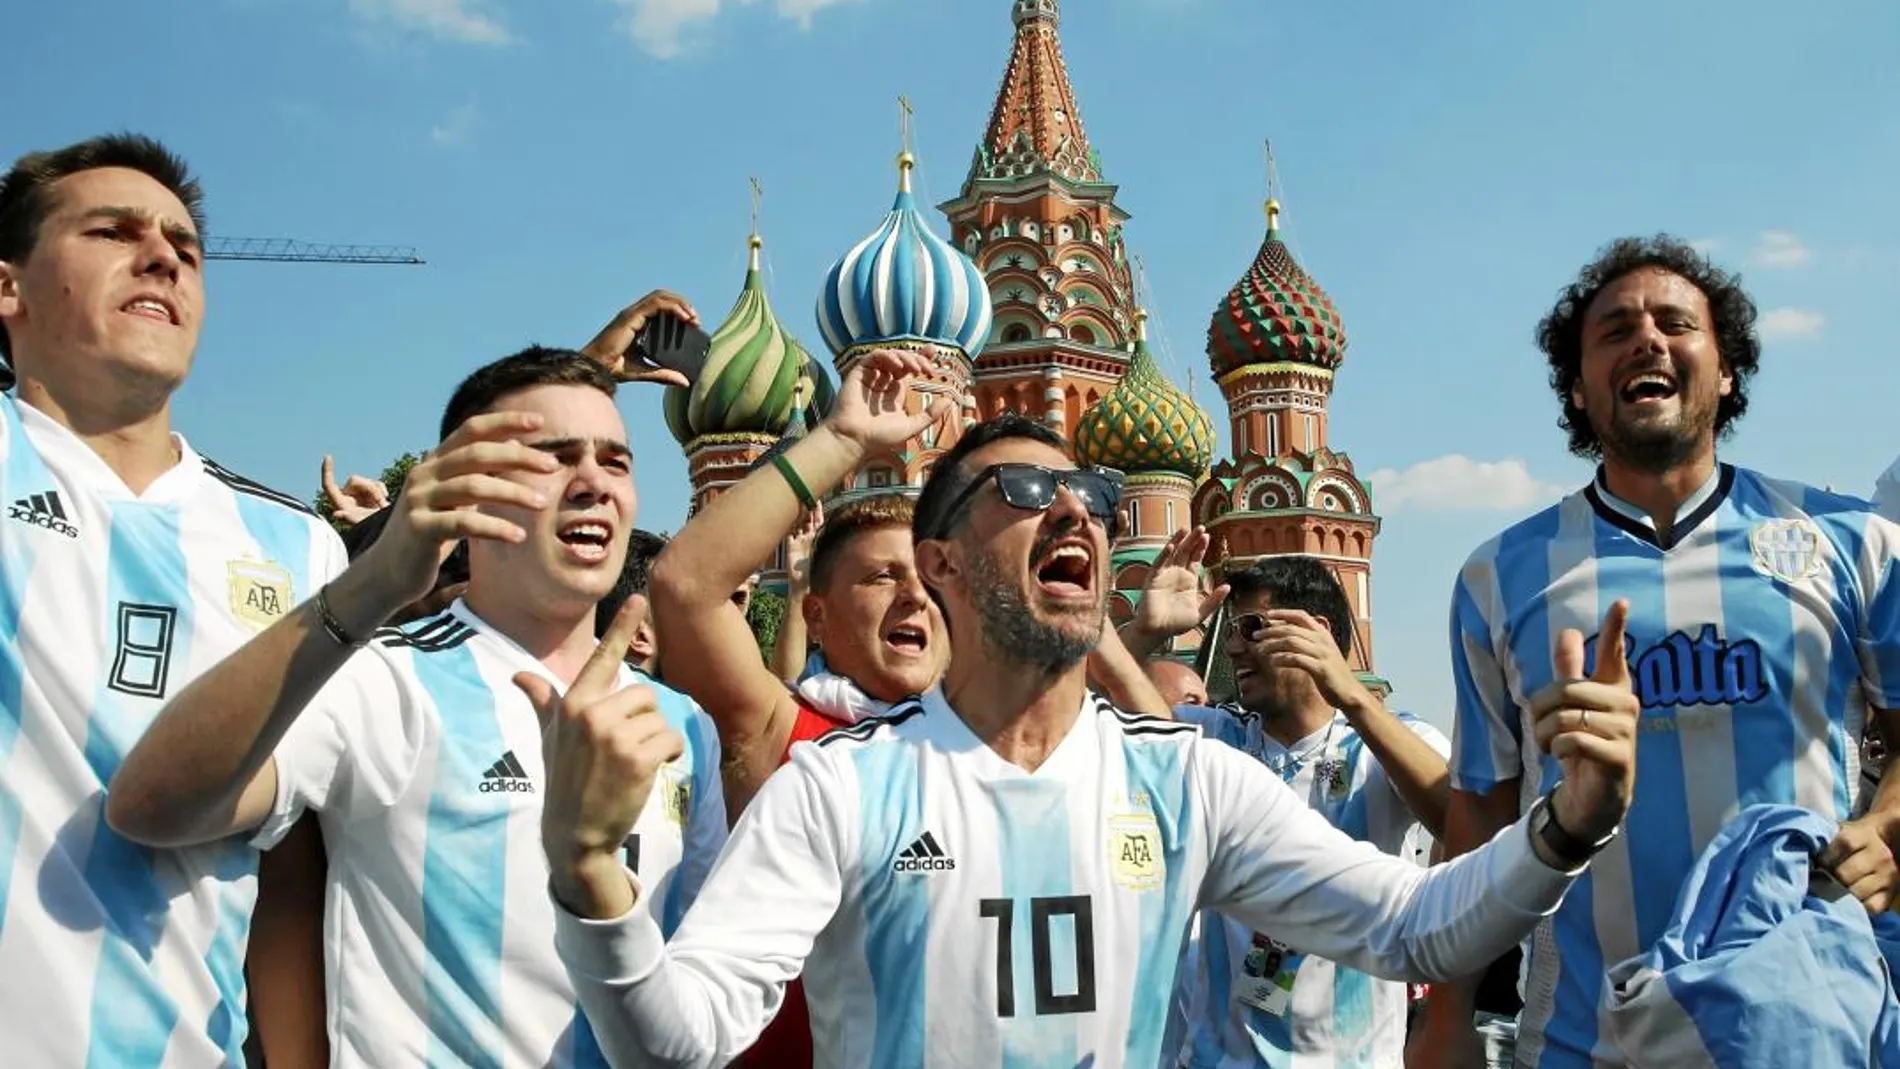 Aficionados argentinos optimistas después del empate en la primera jornada ante Islandia